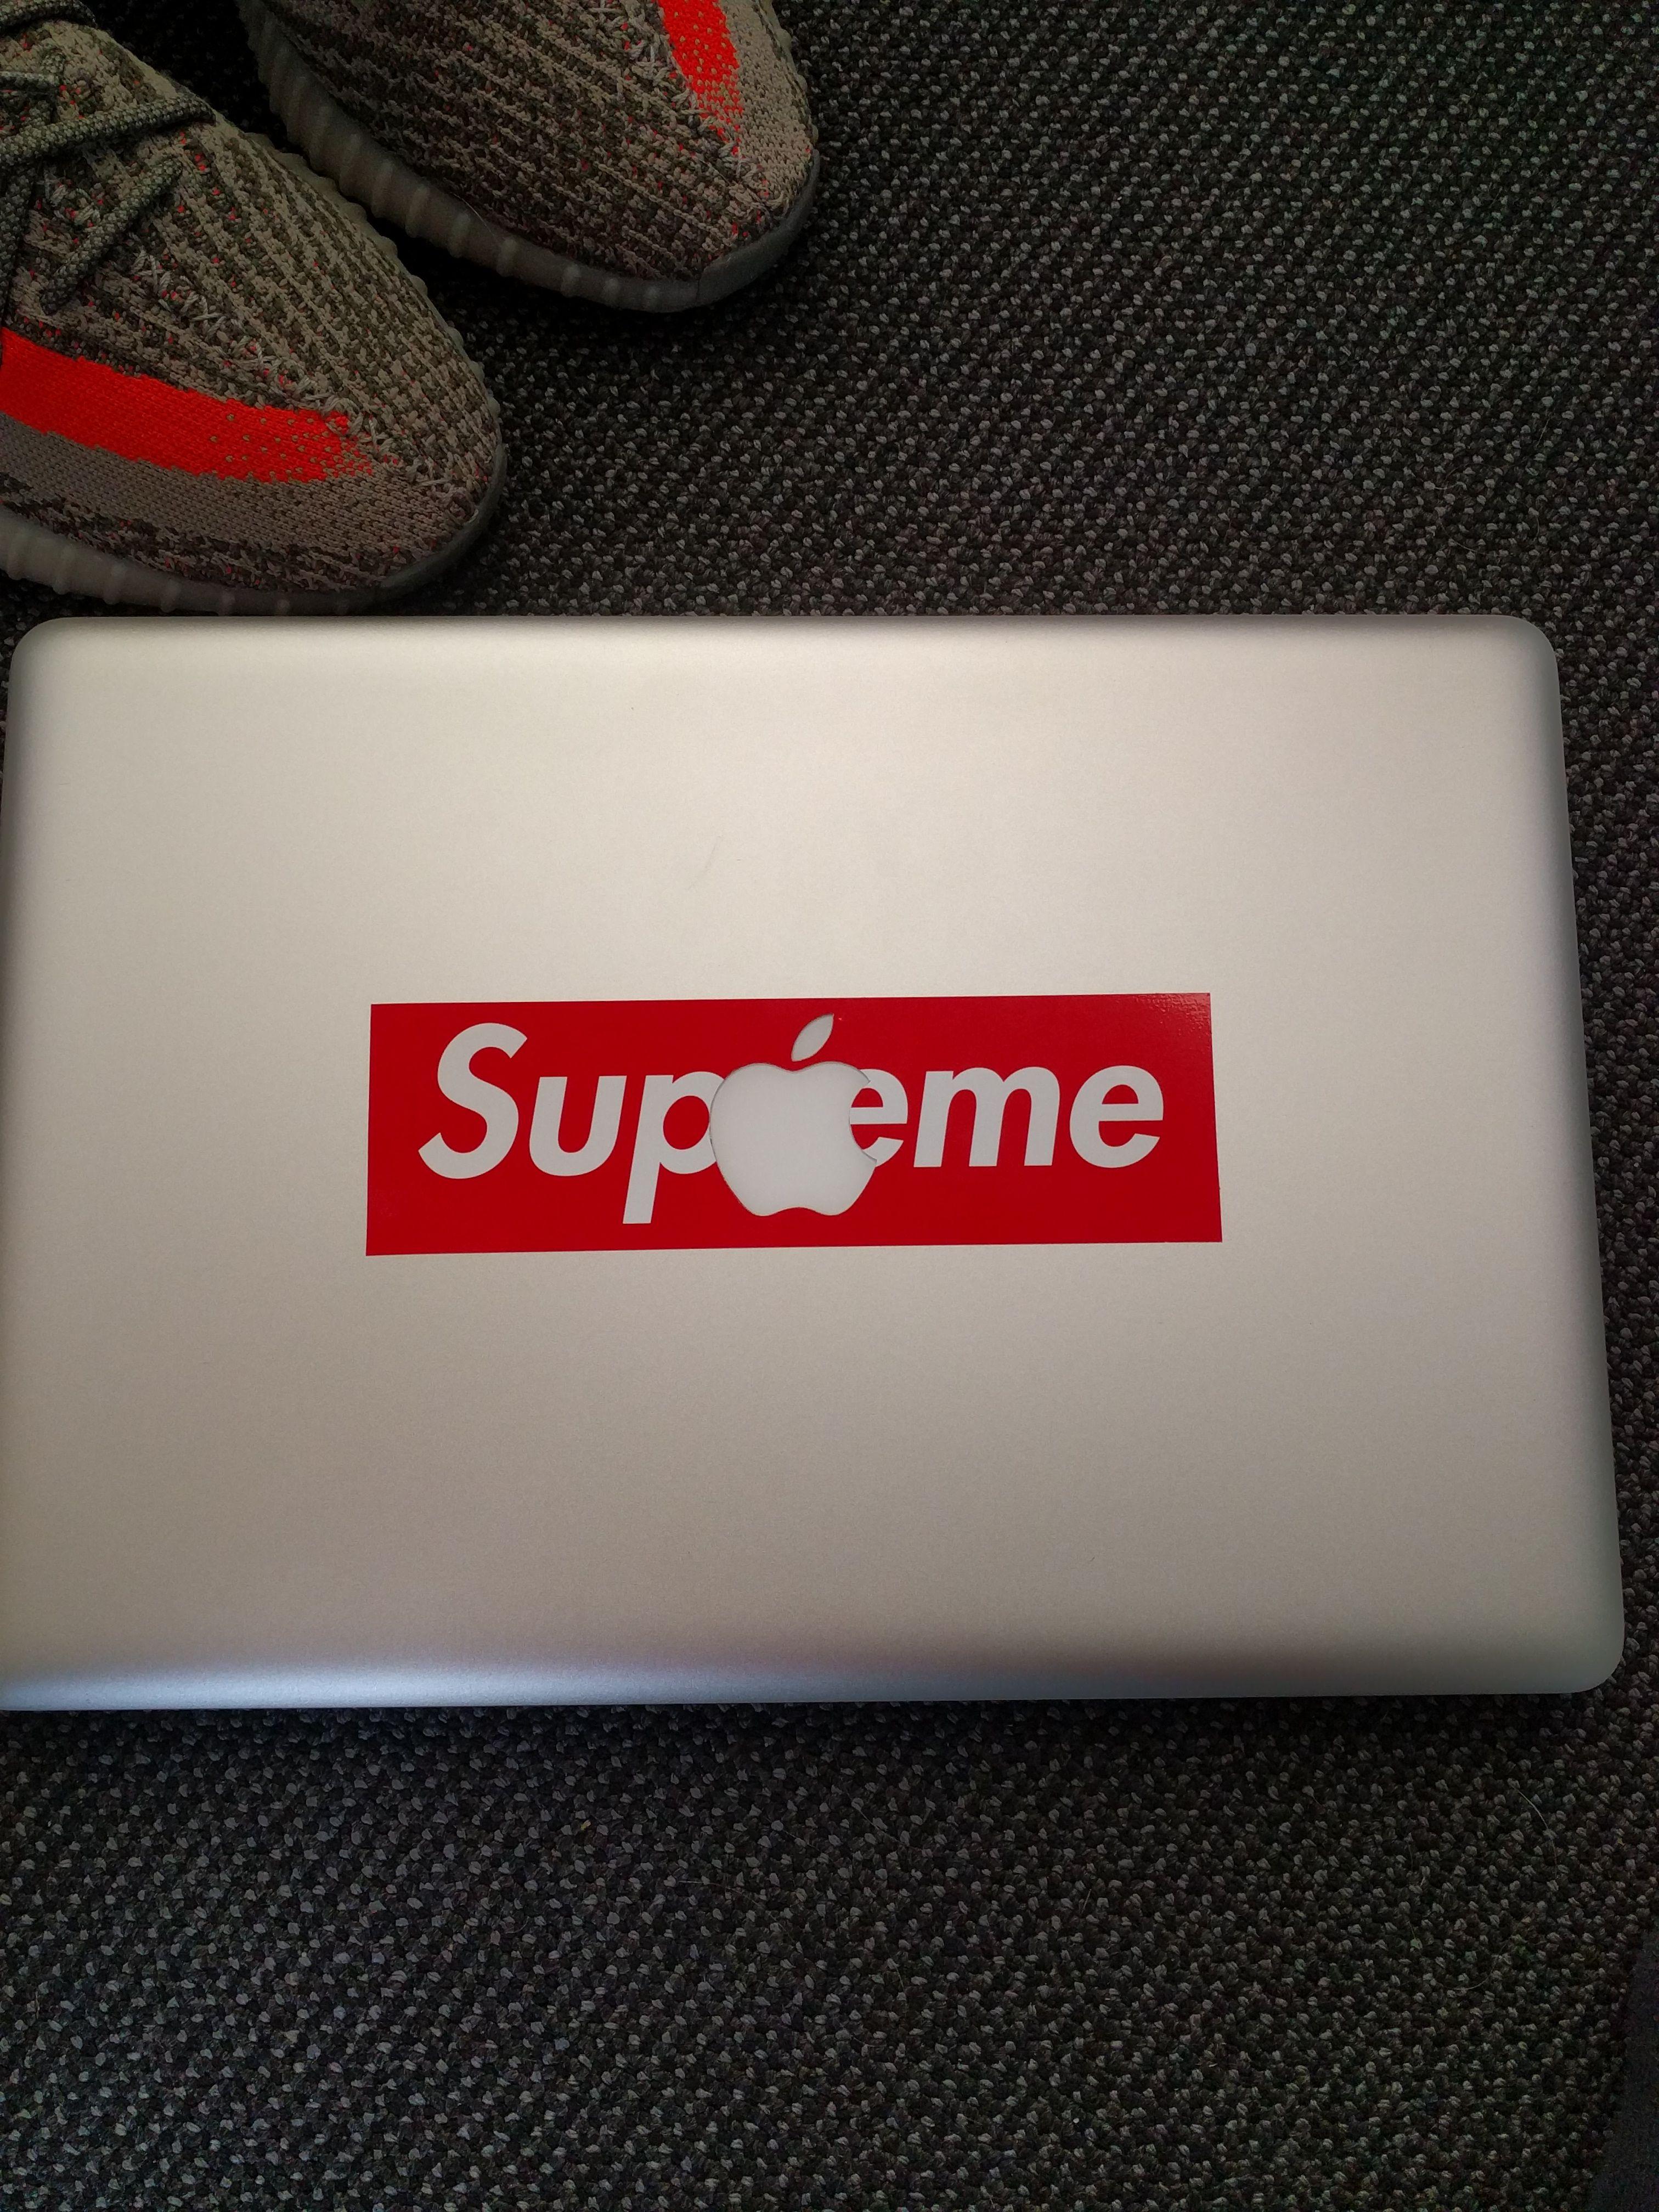 Supreme Apple Logo - Put my supreme sticker to use